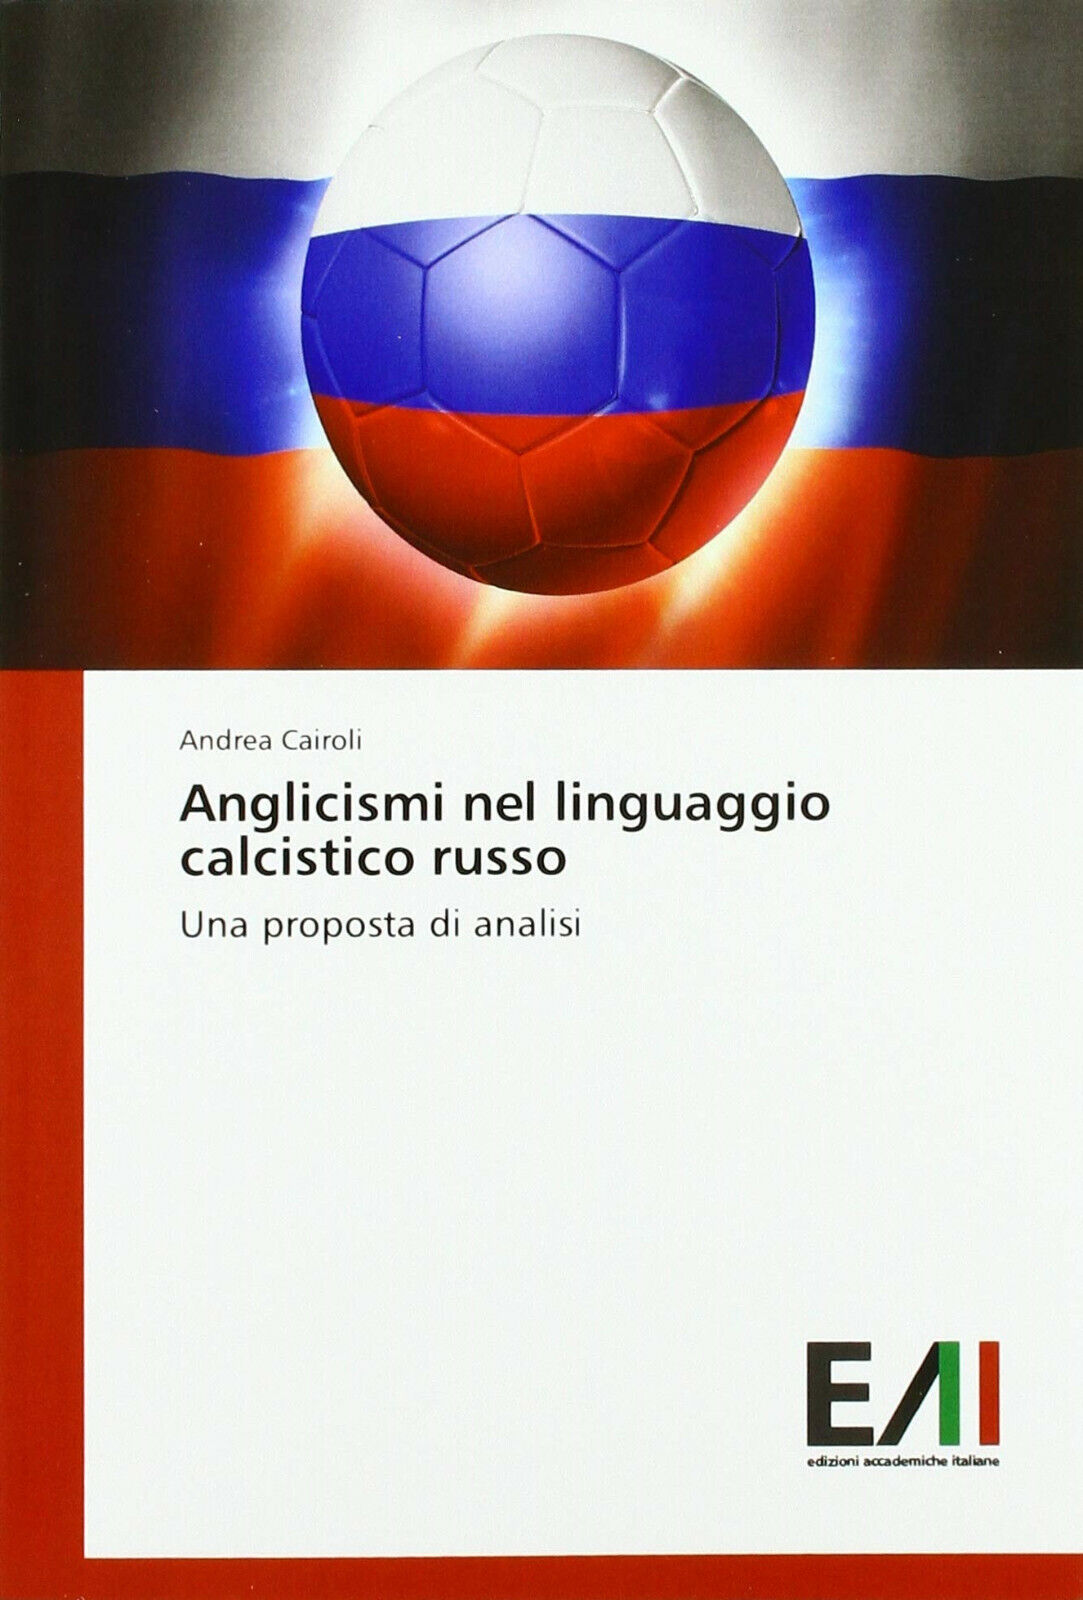 Anglicismi nel linguaggio calcistico russo - Andrea Cairoli - Accademiche,2018